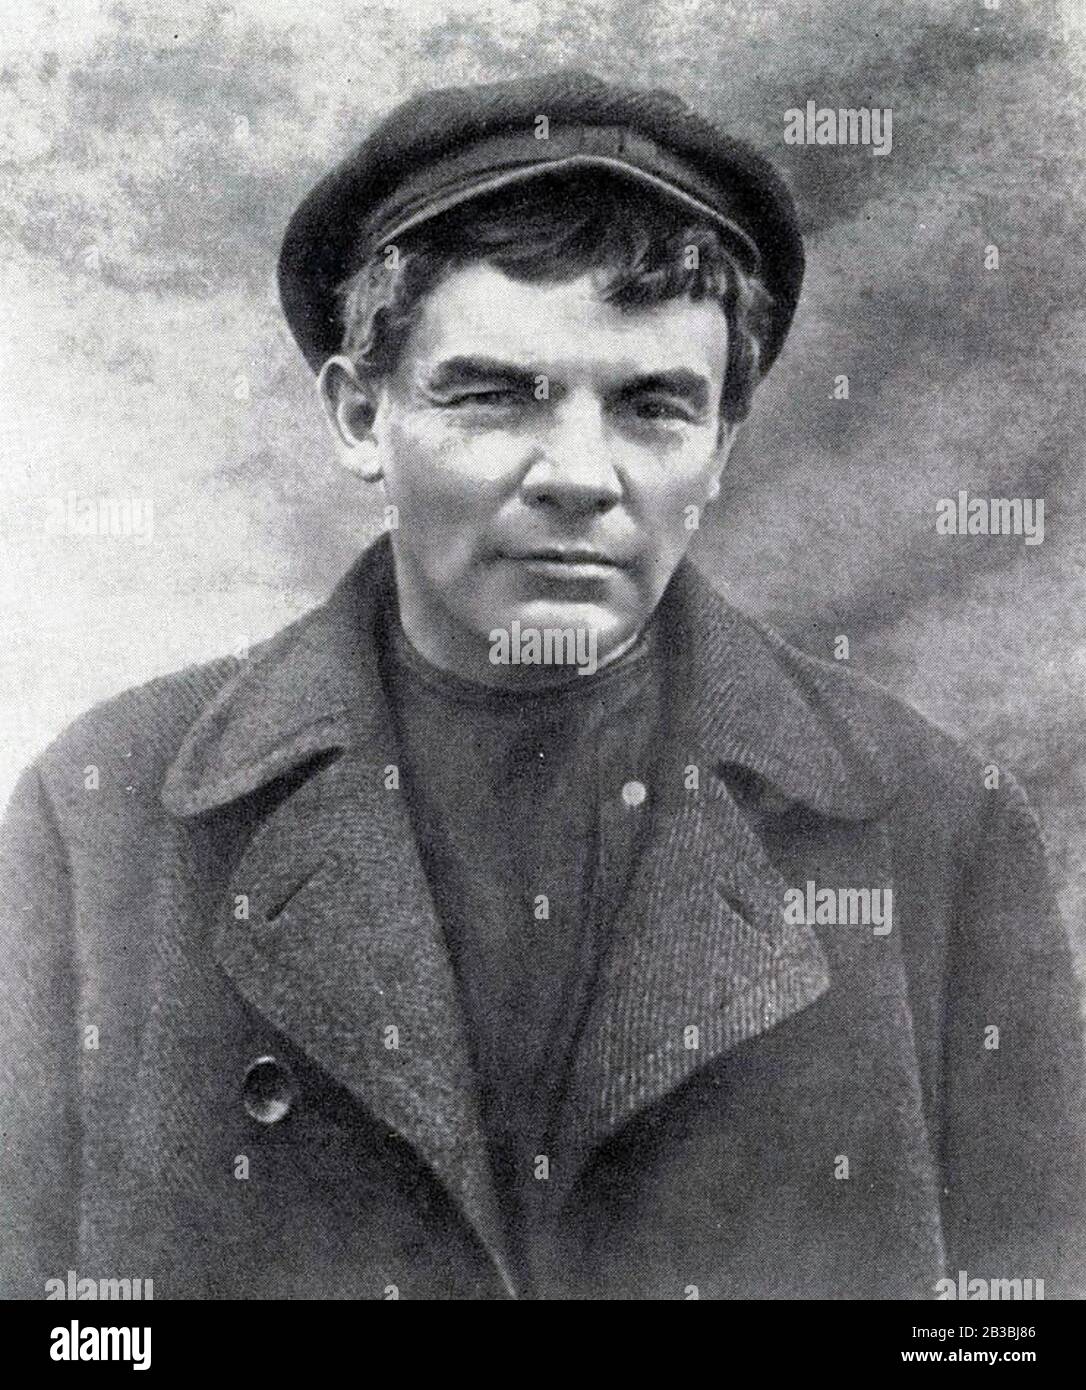 Wladimir LENIN (1870-1924) russischer Revolutionär im August 1917, als er sich in einem Dorf in der Nähe von Razliv, Russland, versteckte. Die saubere Rasur war wie eine Verkleidung aus seinem gewöhnlichen Bart. Stockfoto